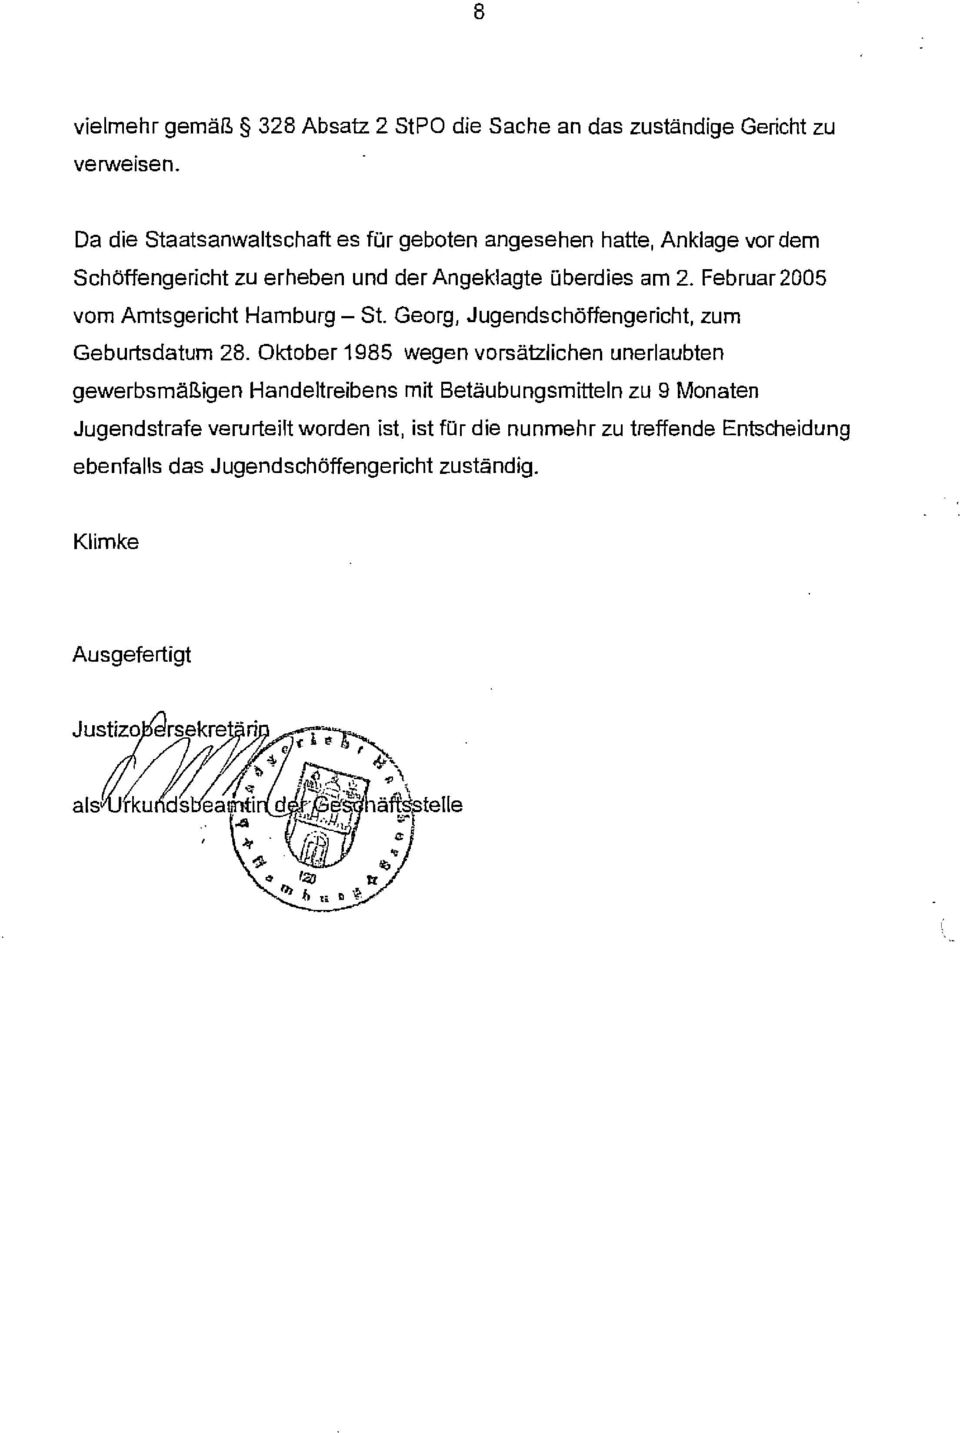 Februar2DD5 vom Amtsgericht Hamburg - St. Georg, Jugendschöffengericht, zum Geburtsdatum 28.